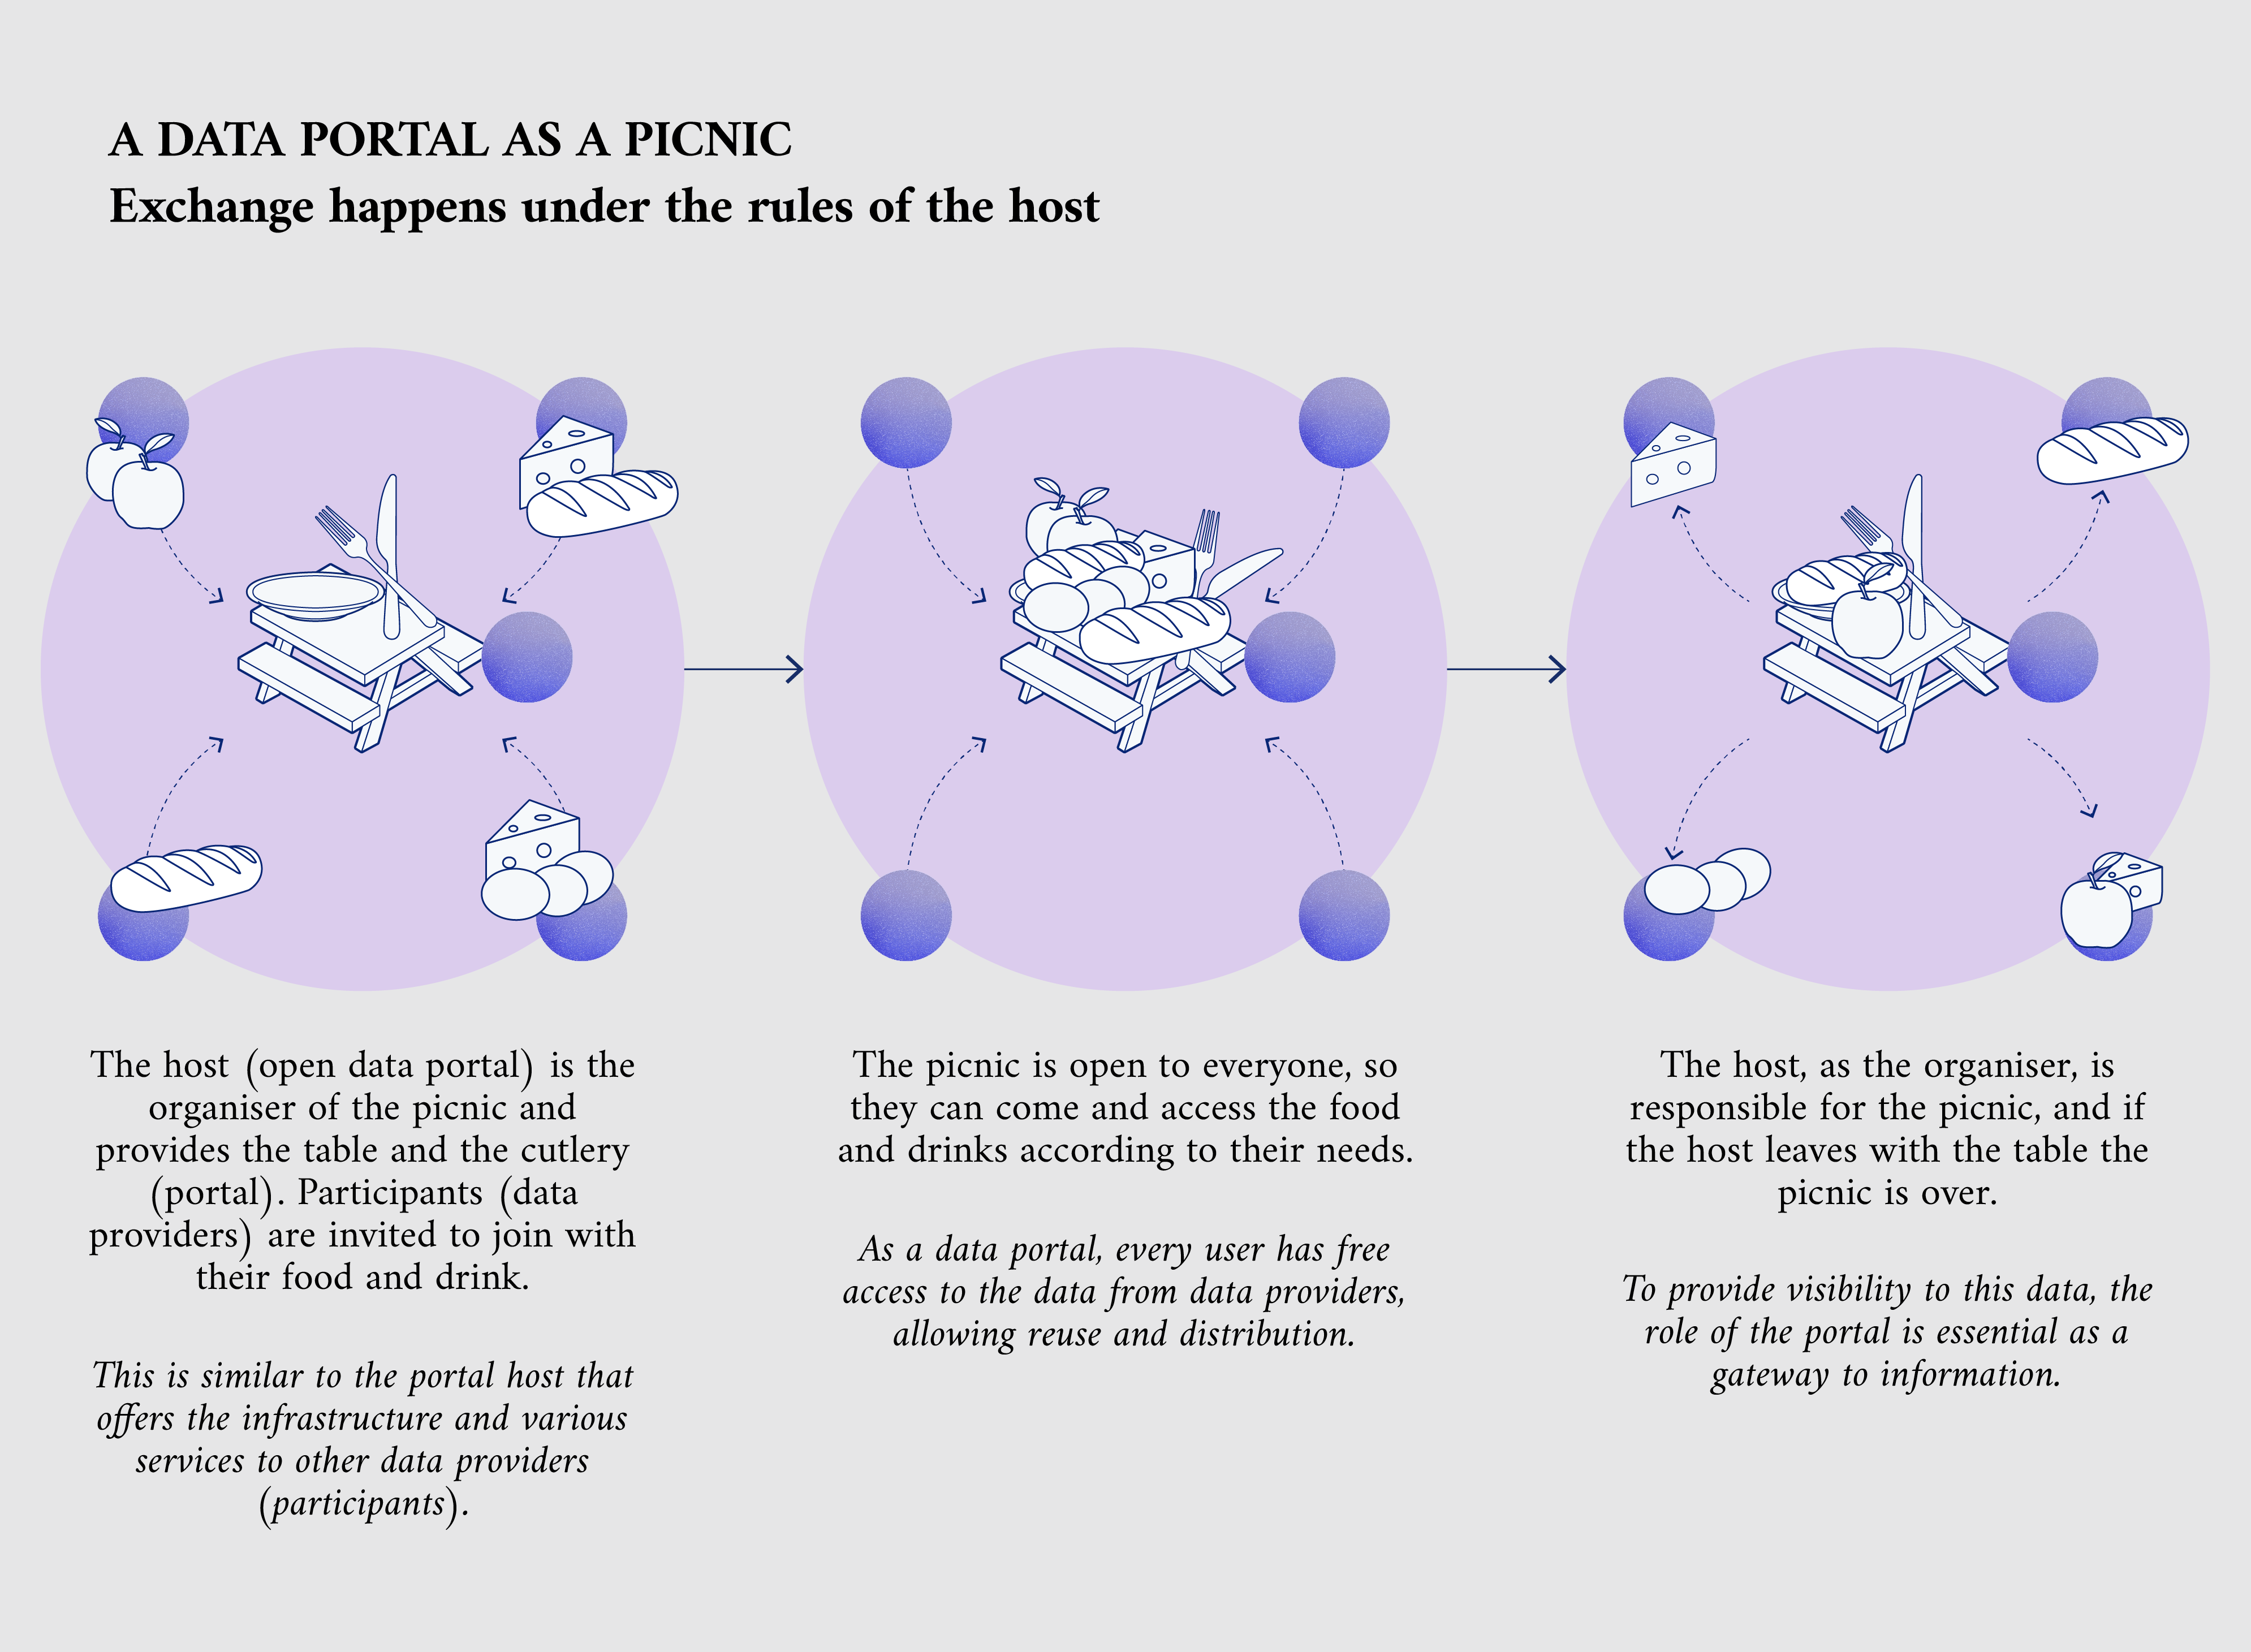 Unha analogía cos portais de datos como picnic